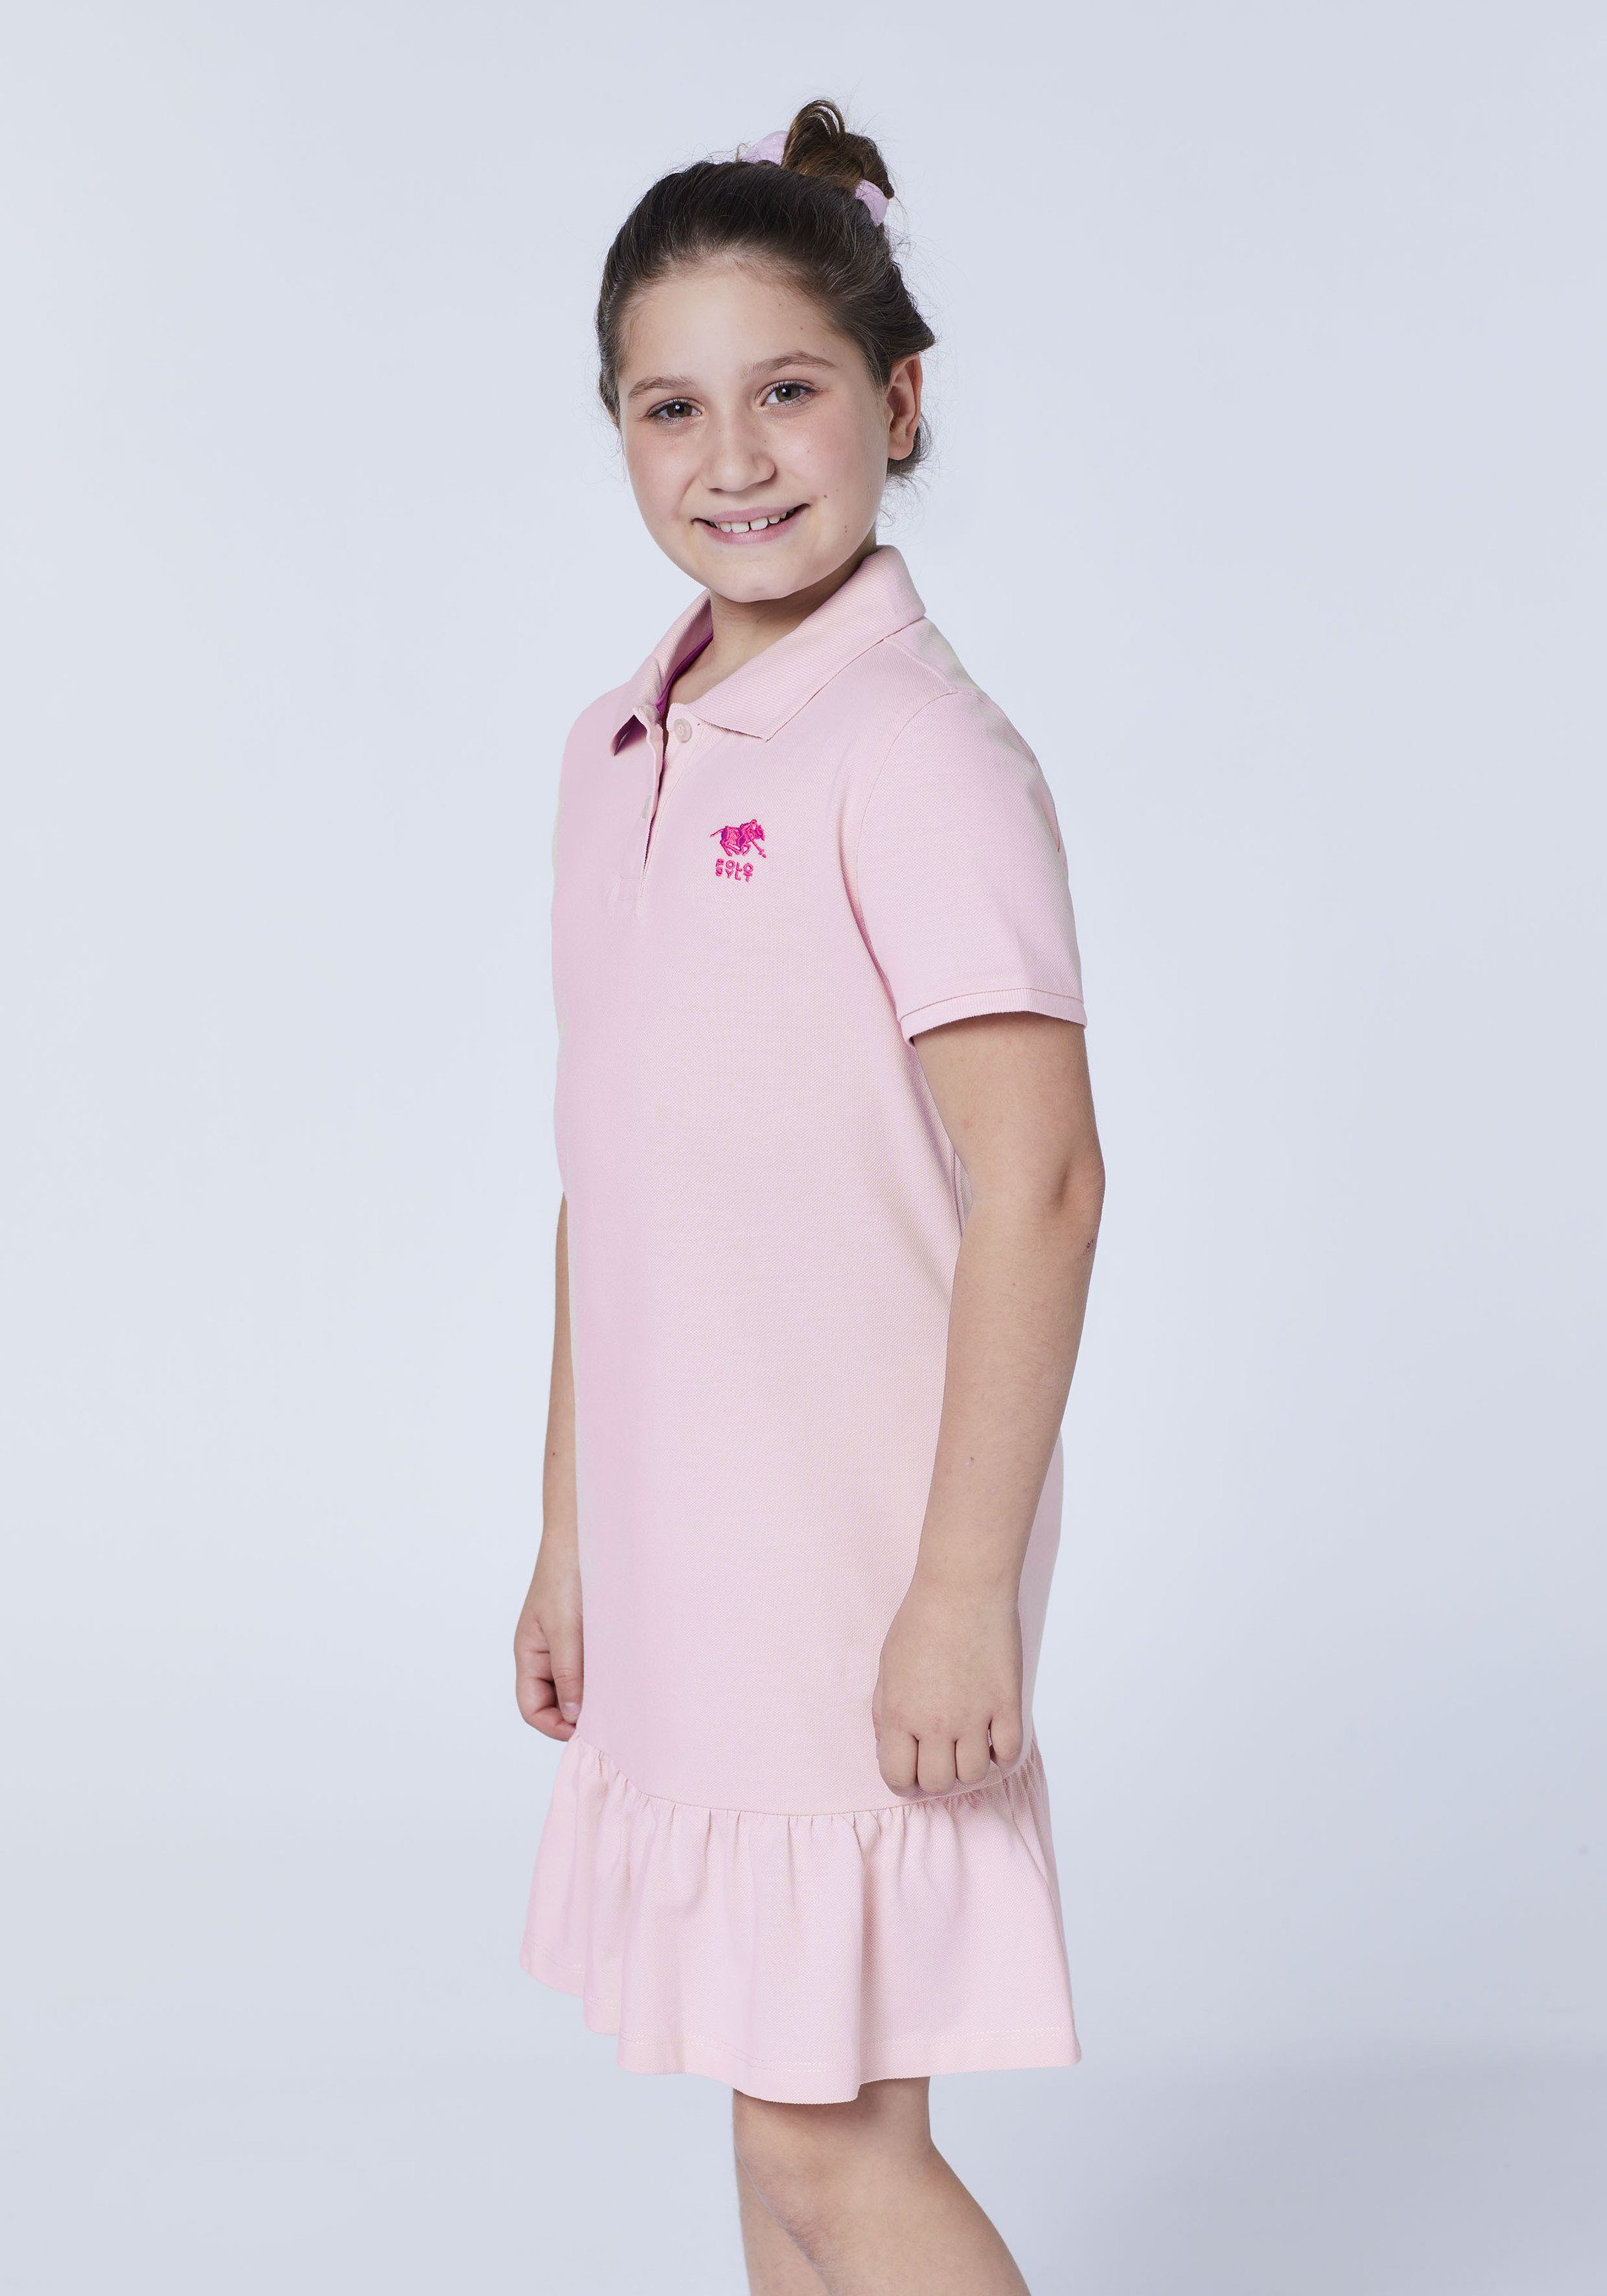 Polo mit Logo Jerseykleid Pink Polo Lady Stickerei Sylt Sylt 13-2806